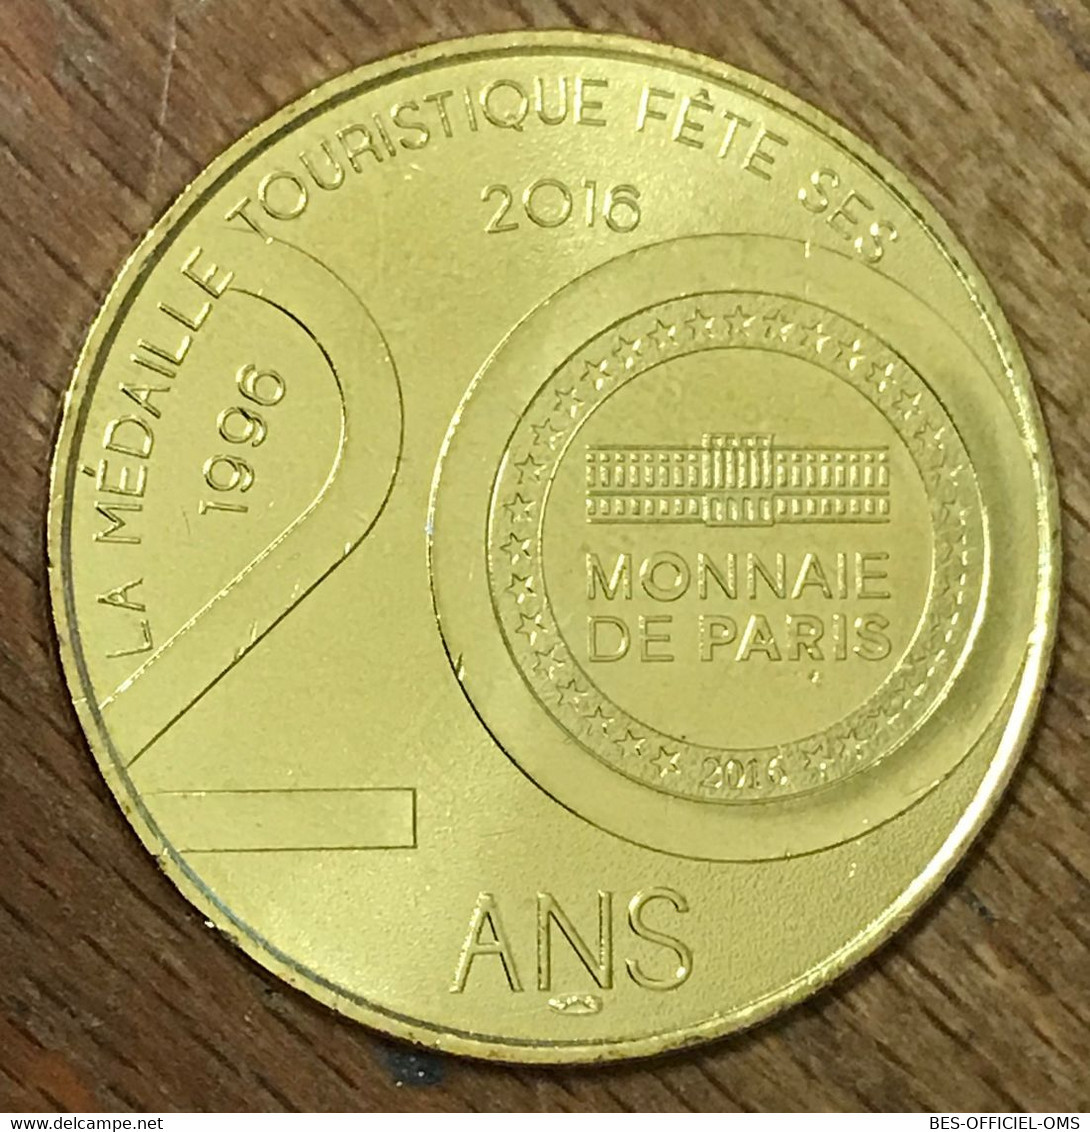 52 LANGRES LA TOUR NAVARRE MDP 2016 MEDAILLE SOUVENIR MONNAIE DE PARIS JETON TOURISTIQUE MEDALS COINS TOKENS - 2016